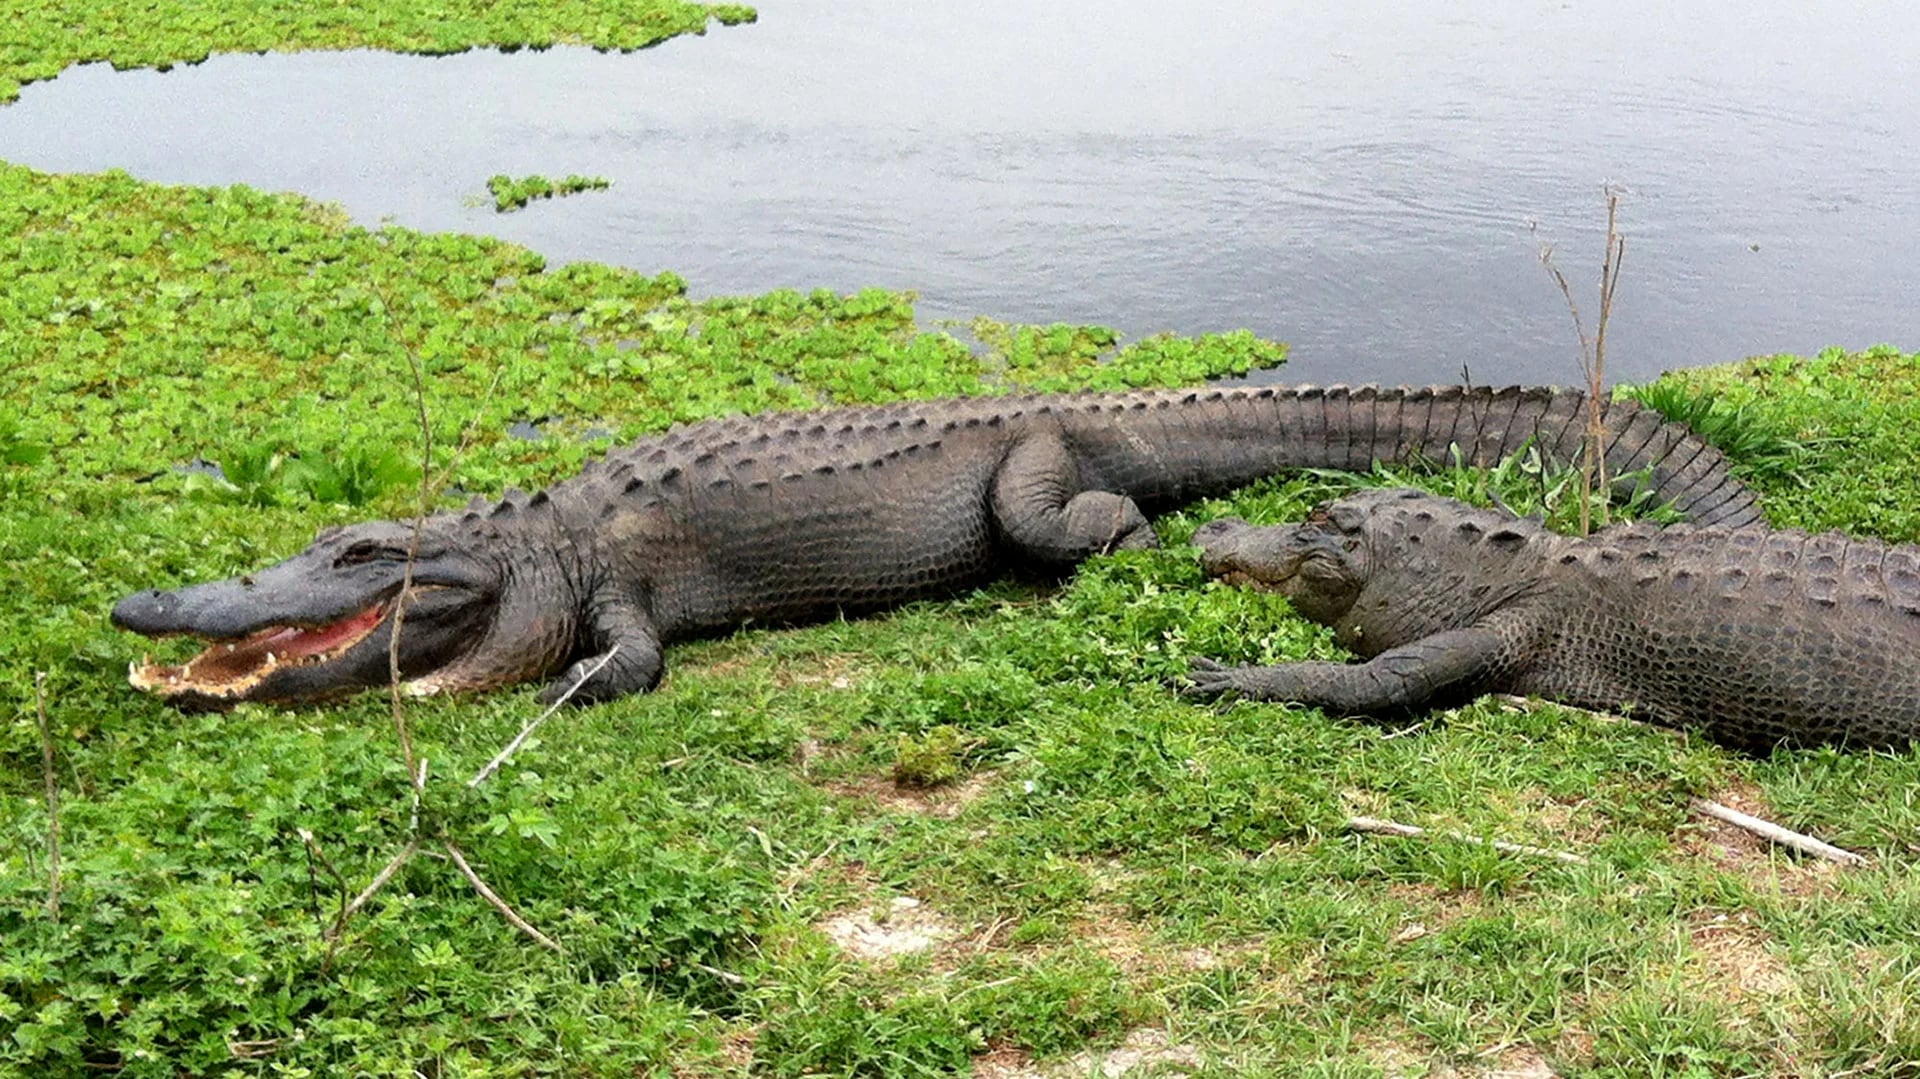 En el estado de Florida hay cientos de miles de cocodrilos. Las leyes prohíben alimentarlos. En Disney era una recurrente diversión